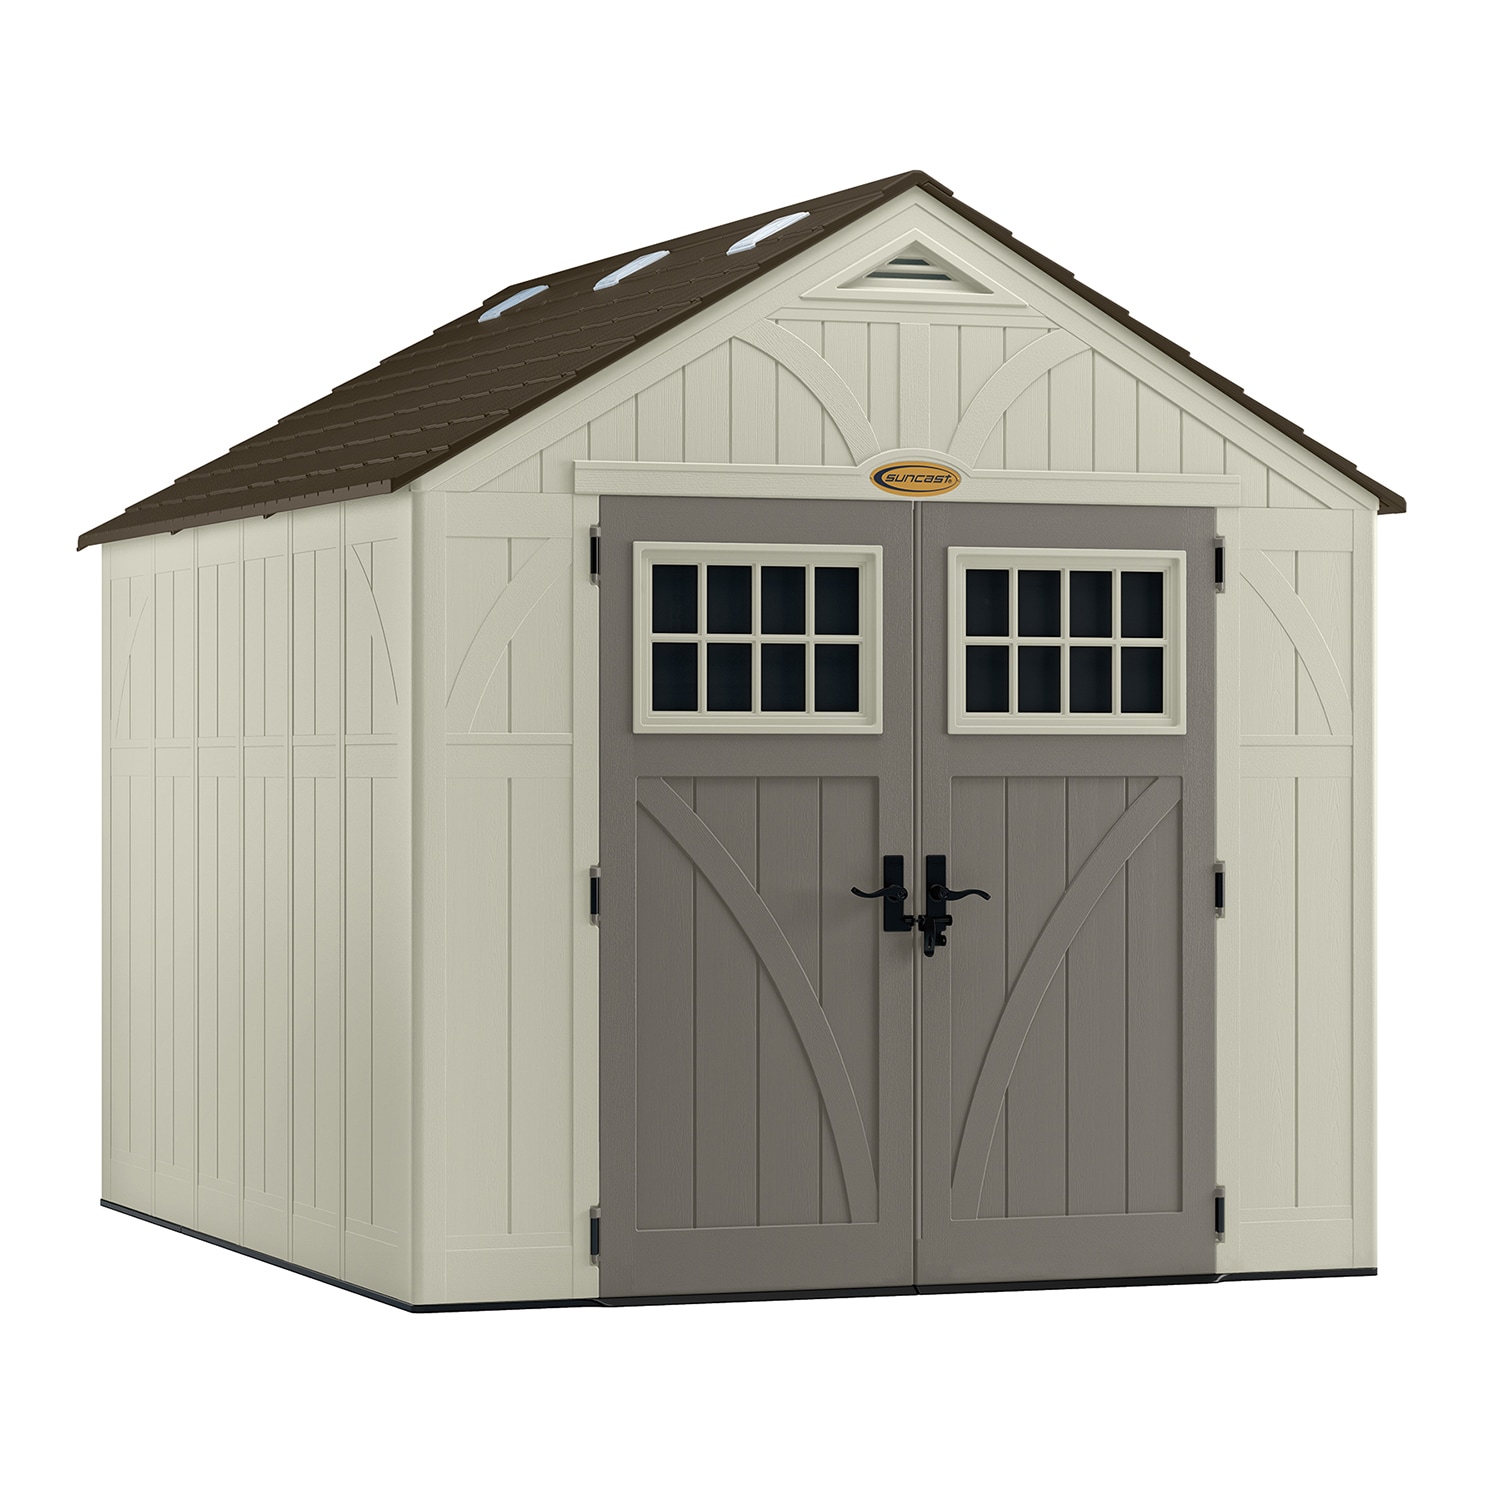 Suncast tremont 8x10 storage shed